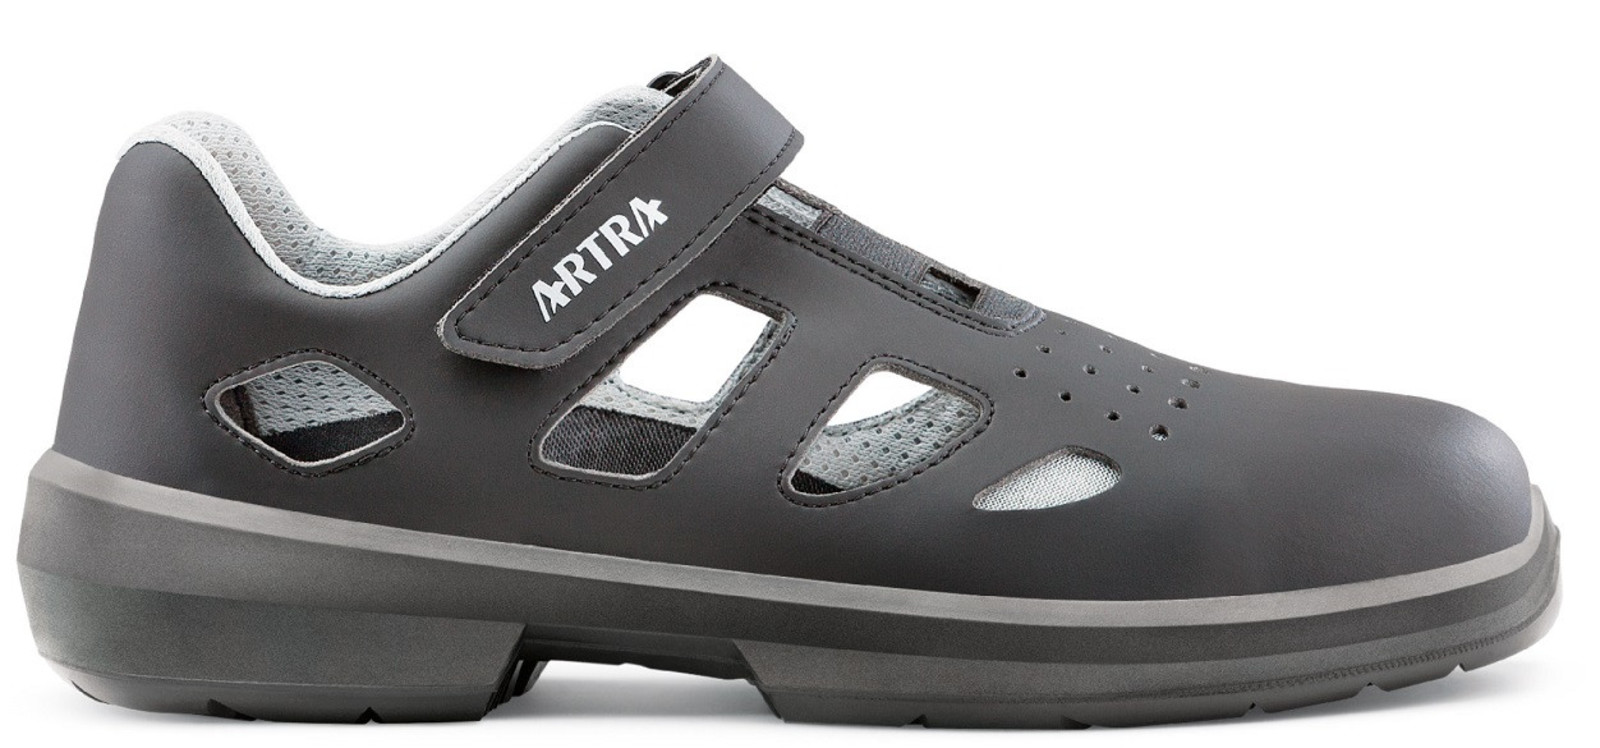 Bezpečnostné sandále Artra Ario 801 661460 S1P - veľkosť: 48, farba: čierna